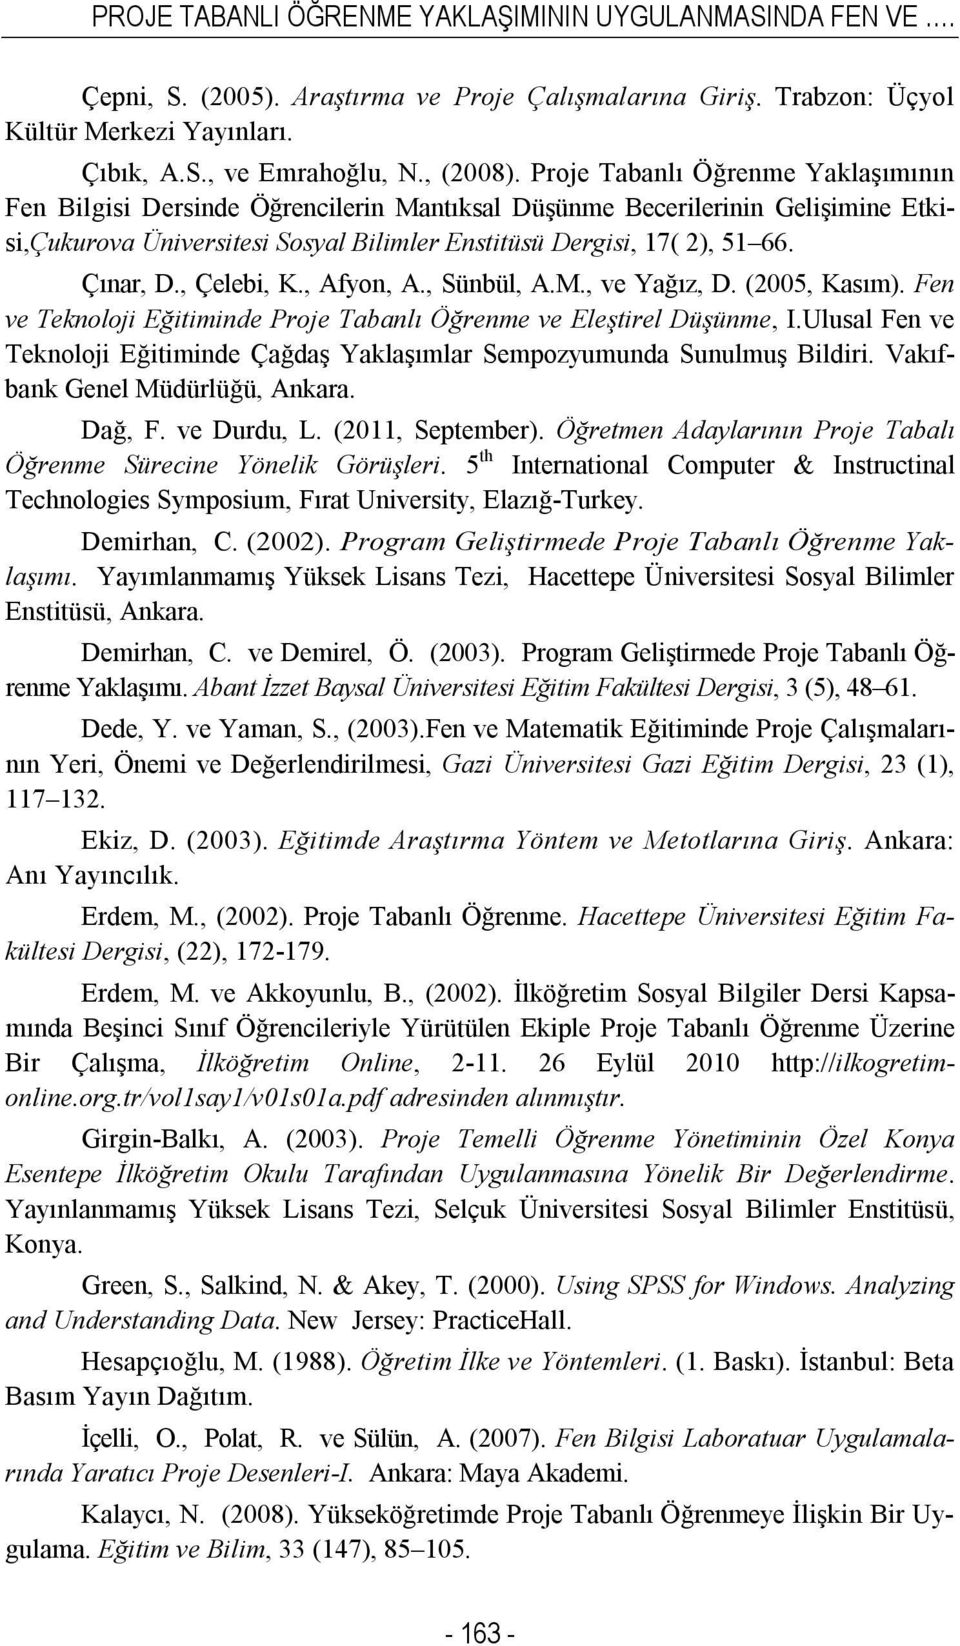 , Çelebi, K., Afyon, A., Sünbül, A.M., ve Yağız, D. (2005, Kasım). Fen ve Teknoloji Eğitiminde Proje Tabanlı Öğrenme ve Eleştirel Düşünme, I.